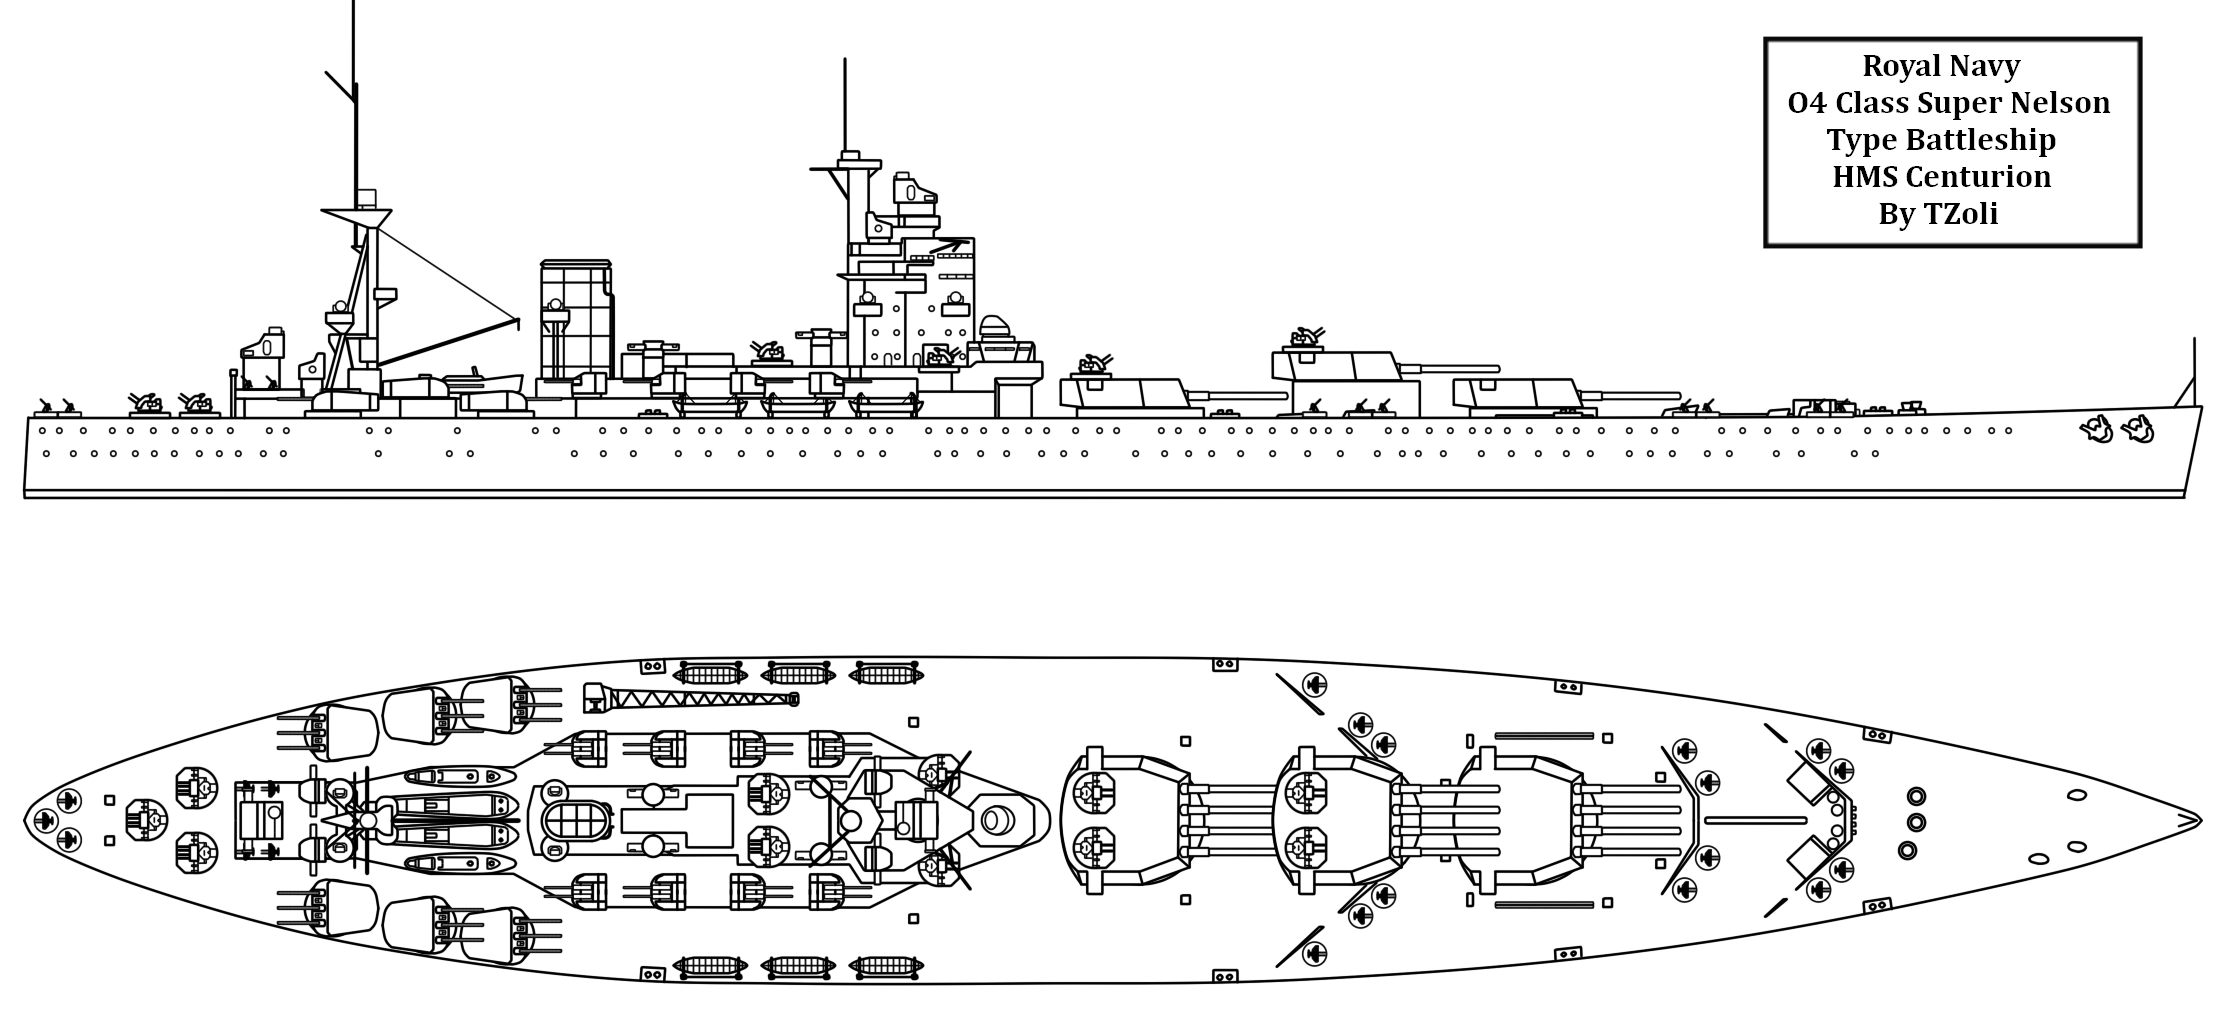 Hull Drawings: Sailboat Hull Design Drawing, Battleship Hull Plans 